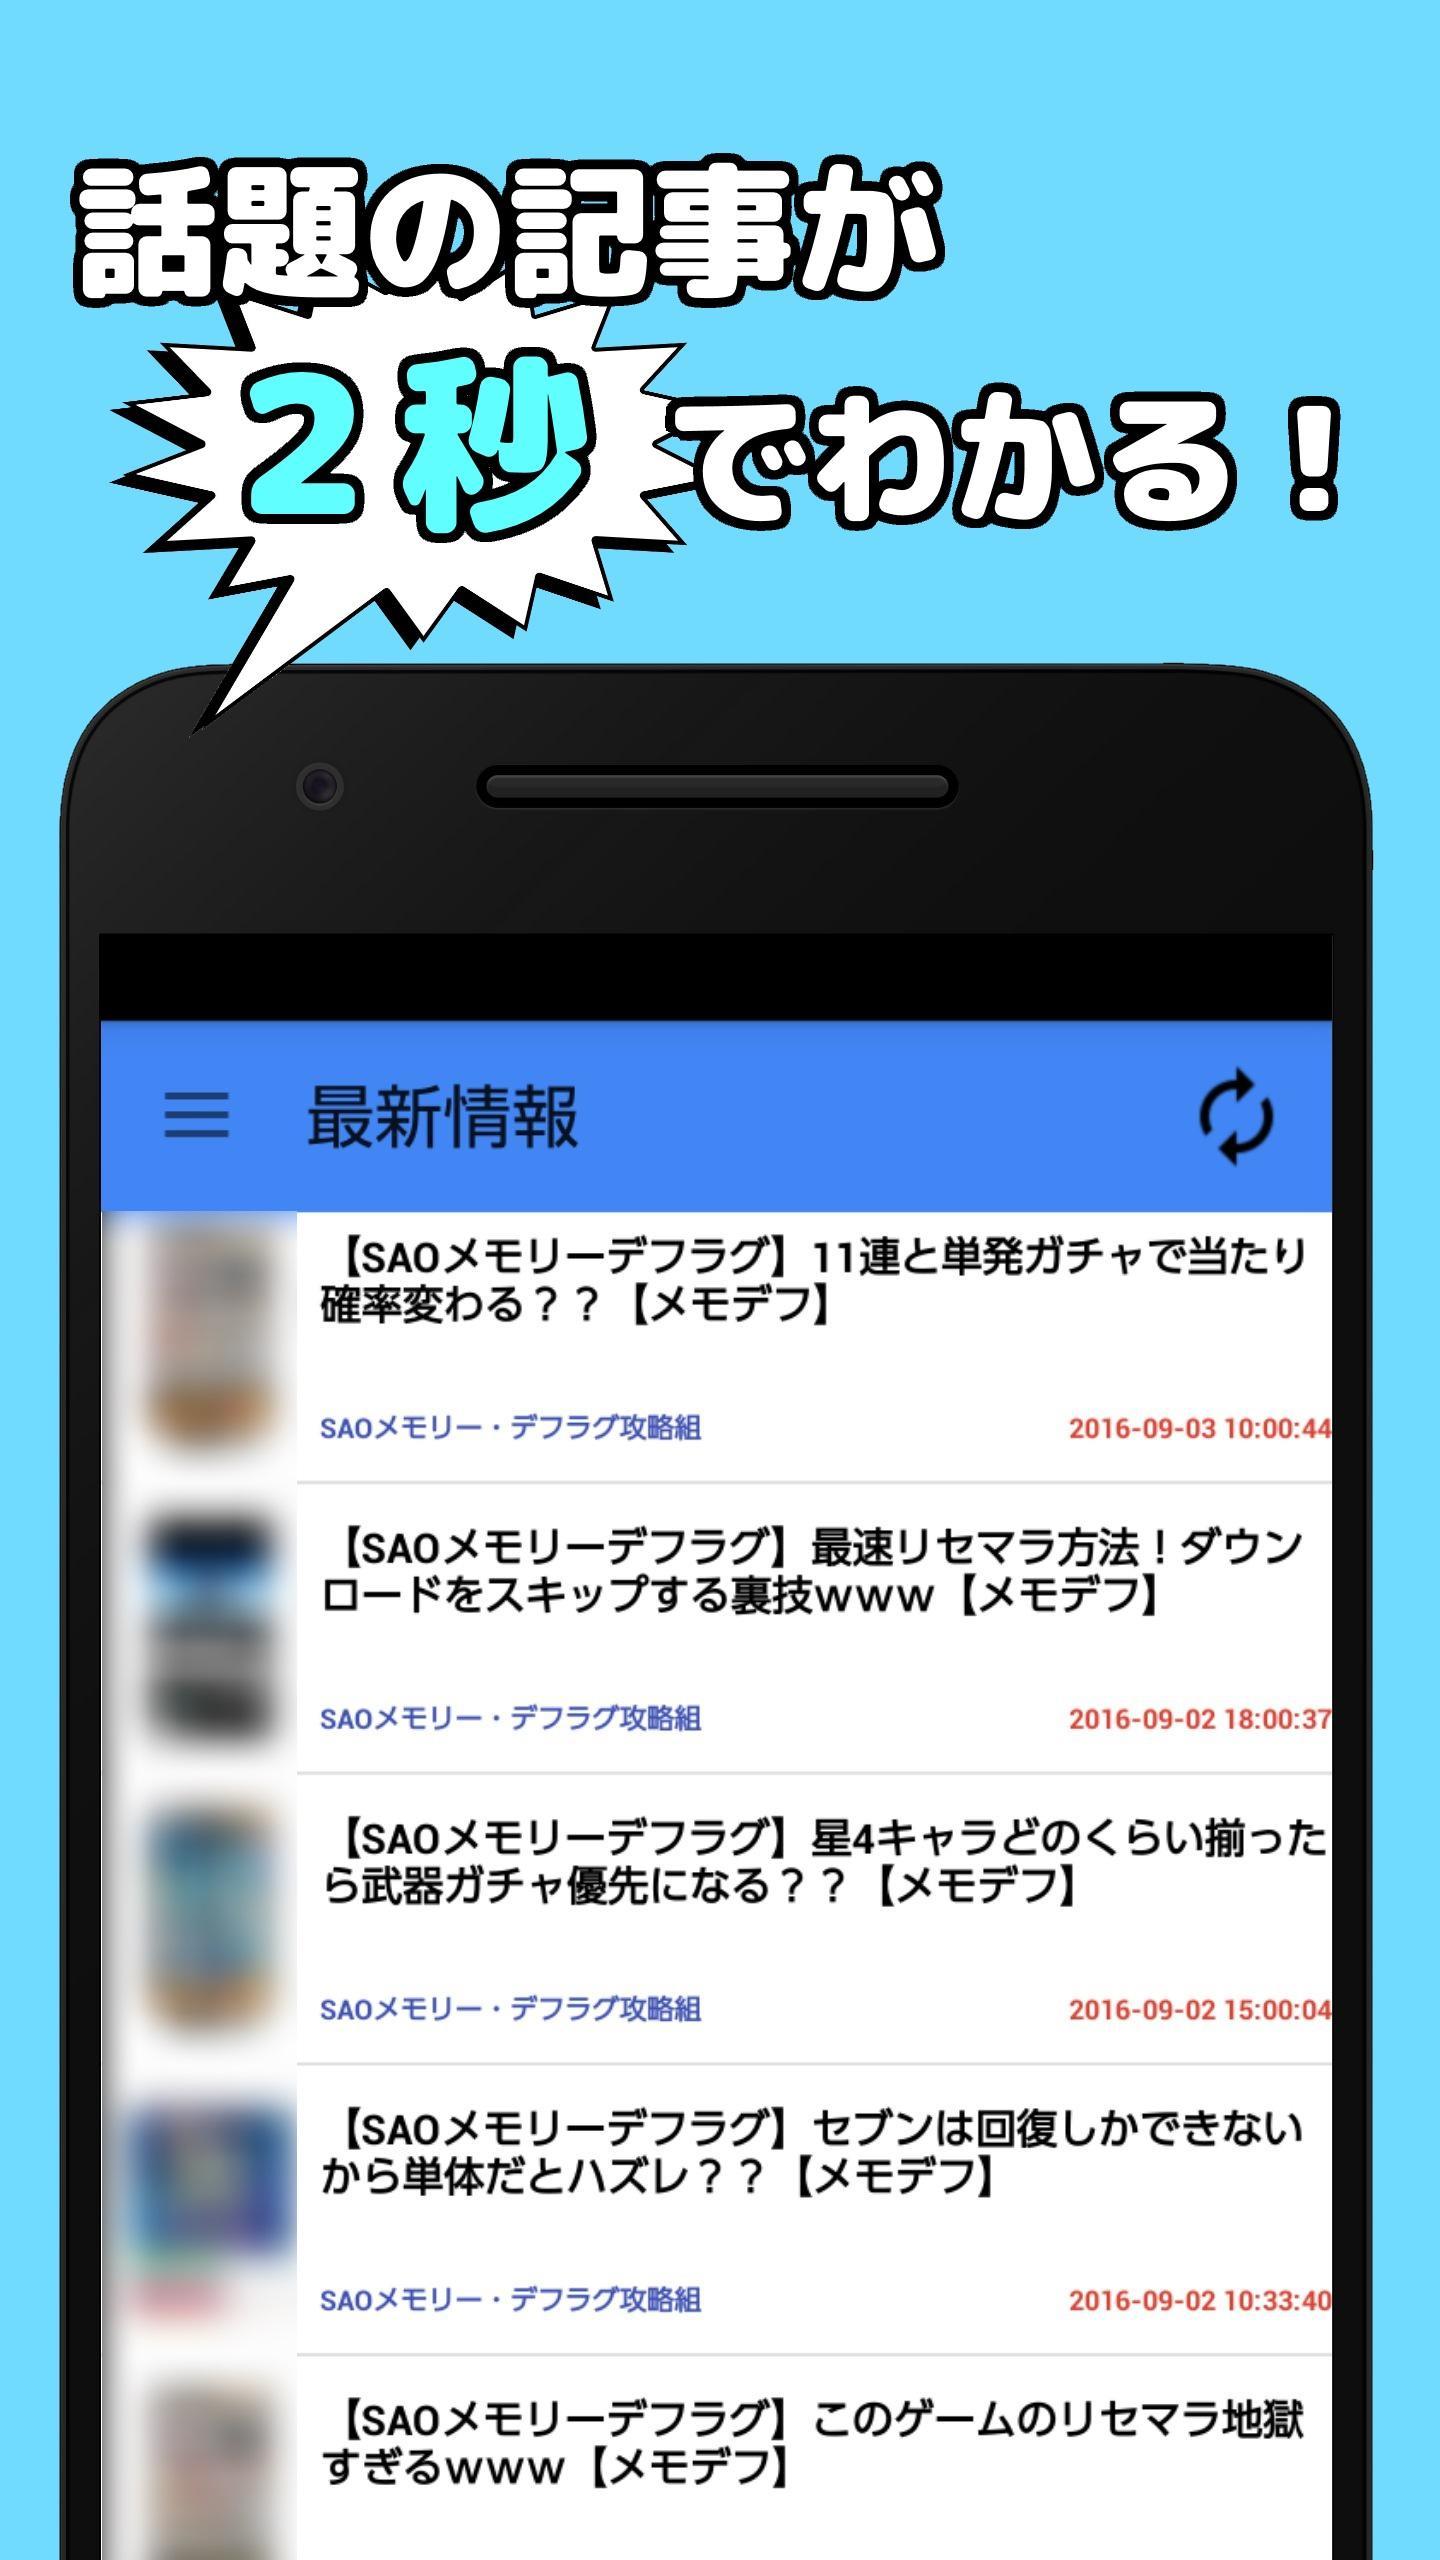 攻略news For Sao メモリー デフラグ For Android Apk Download